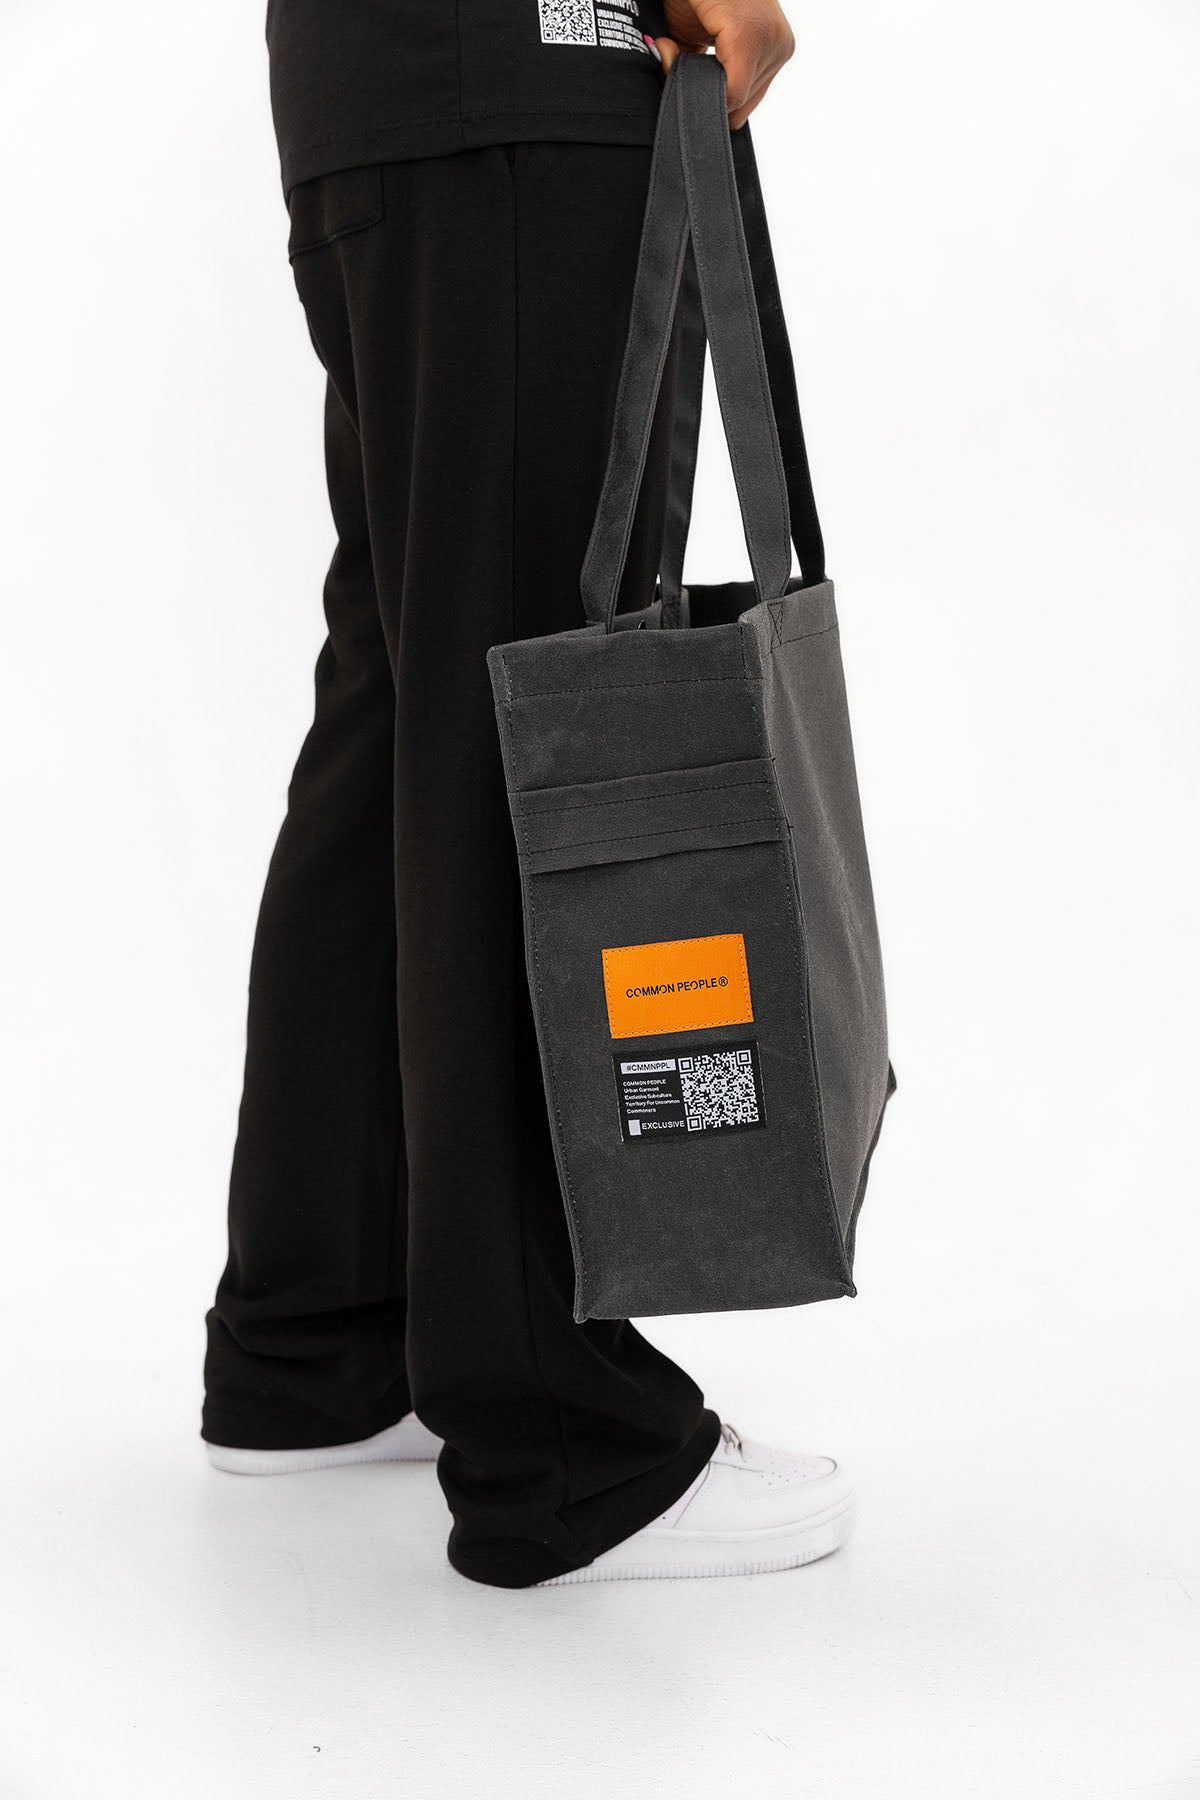 Nomad - Large Size -  Waxed Canvas - Black Bag